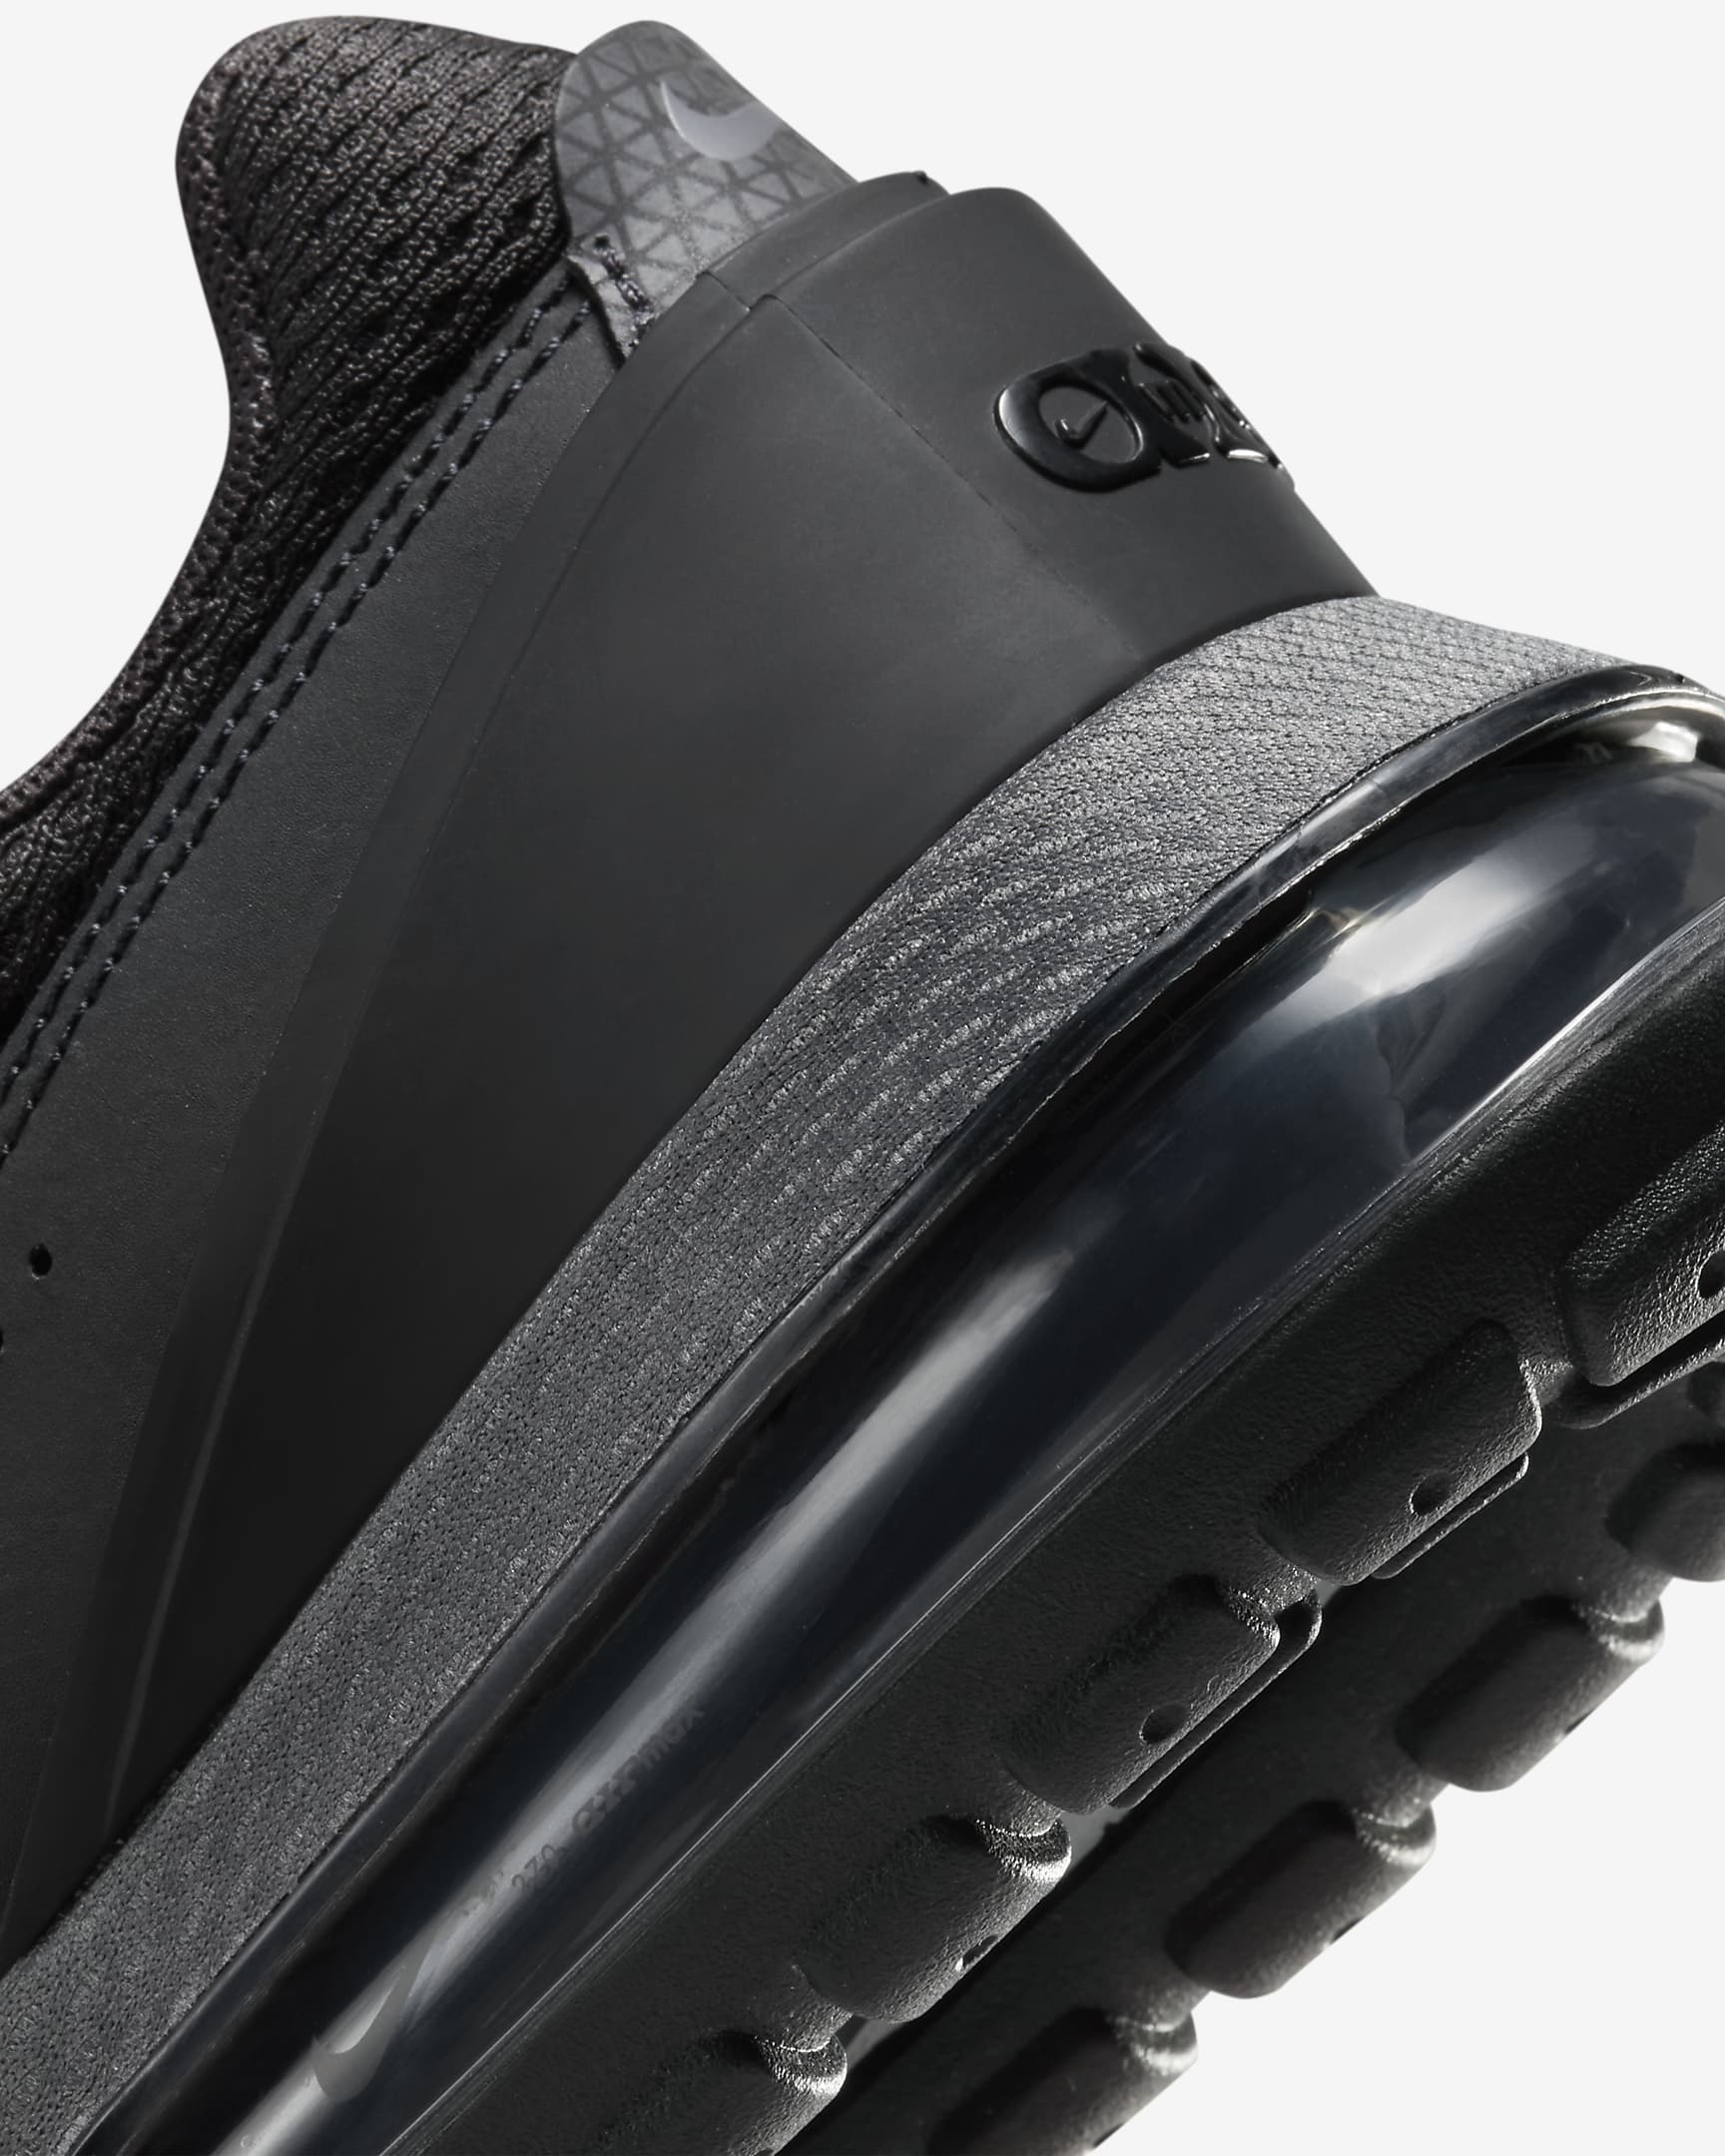 Sko Nike Air Max Pulse för kvinnor - Svart/Anthracite/Particle Grey/Svart